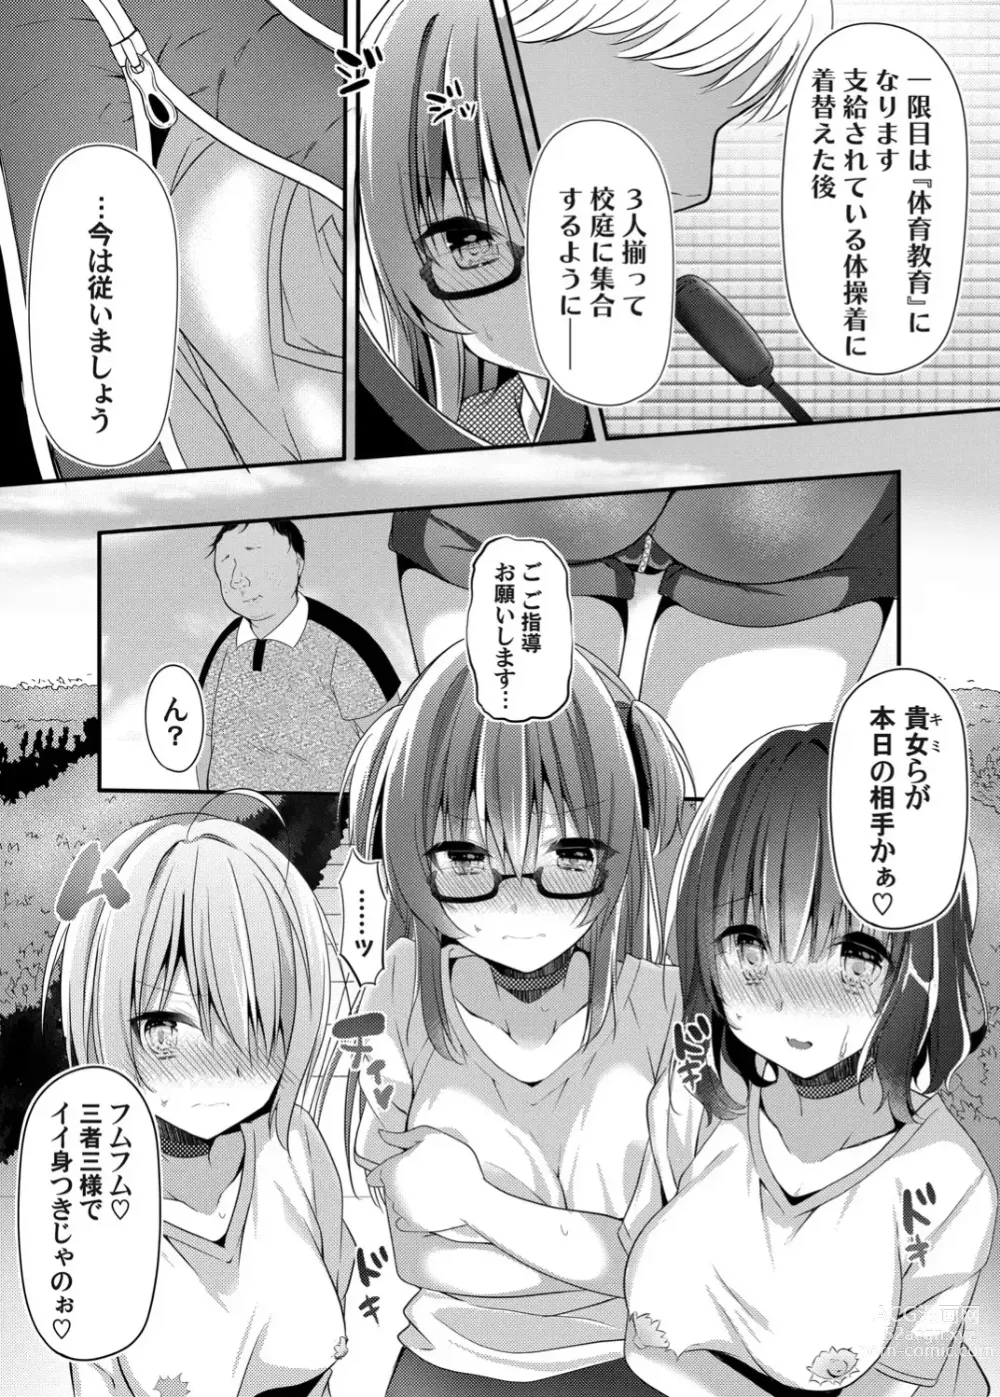 Page 23 of doujinshi Botsuraku Lady no Hakoniwa Showtime